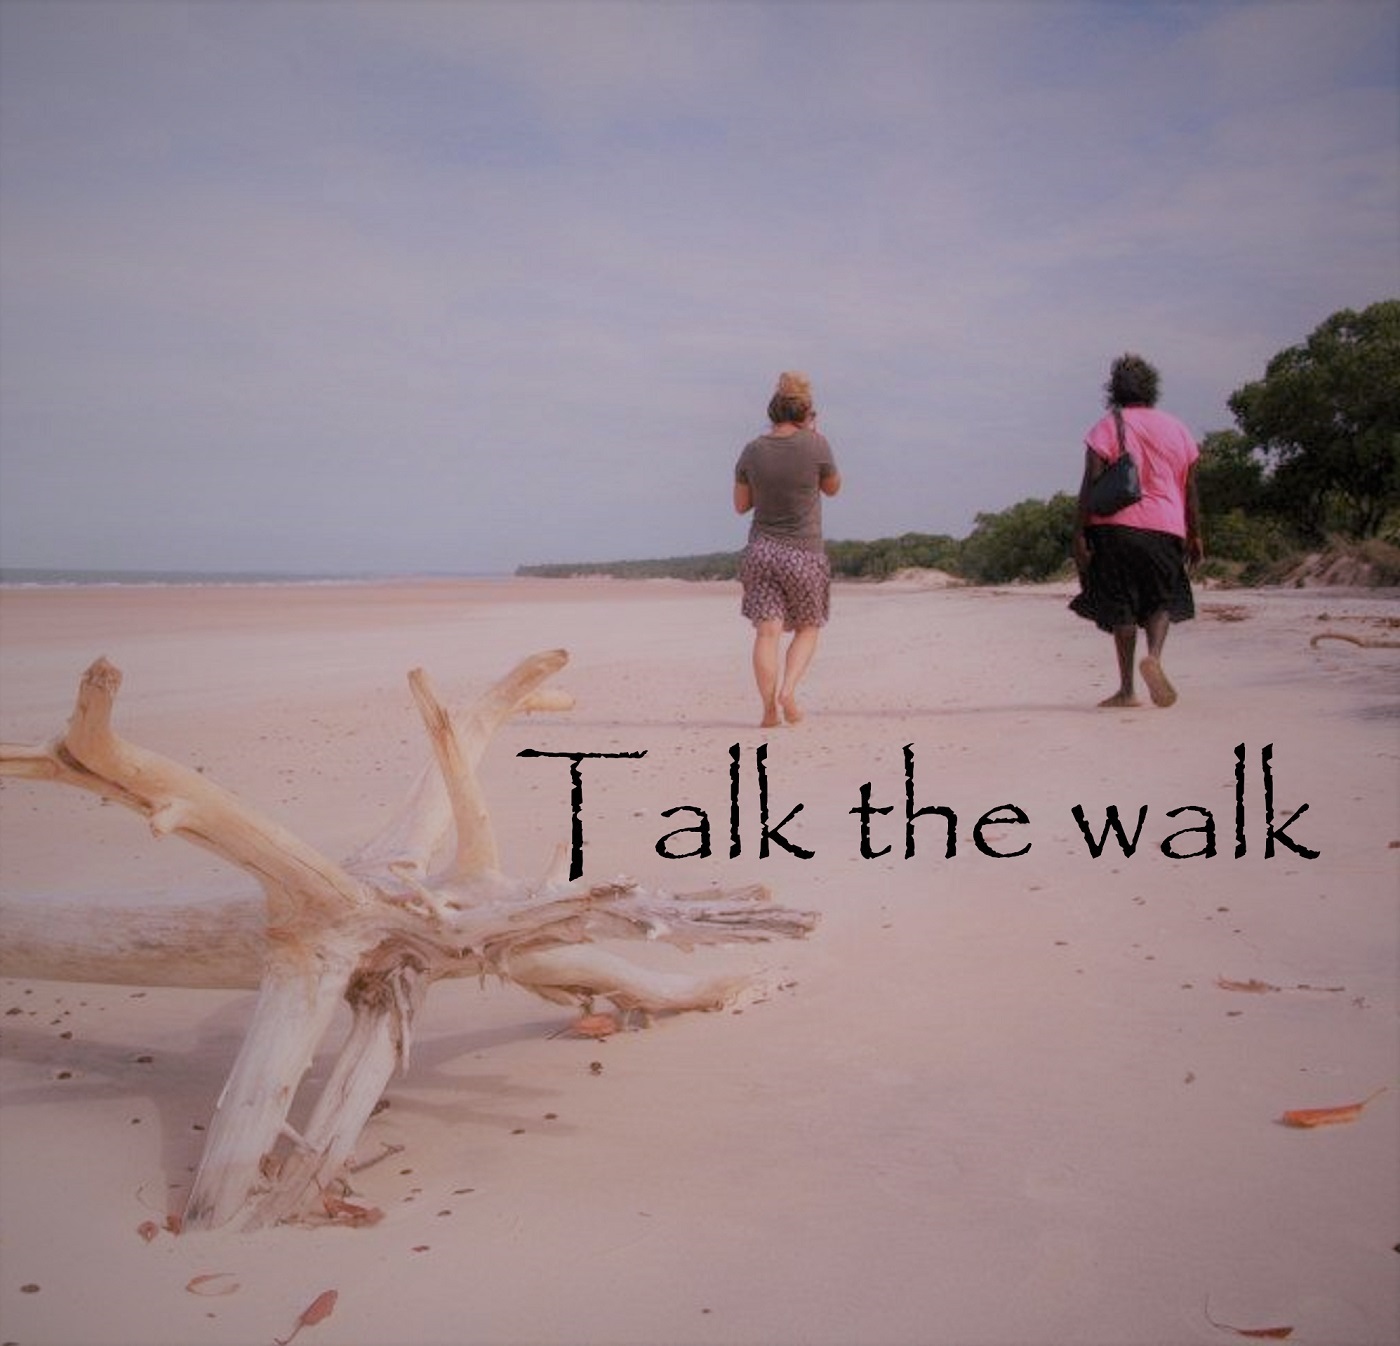 Talk the Walk